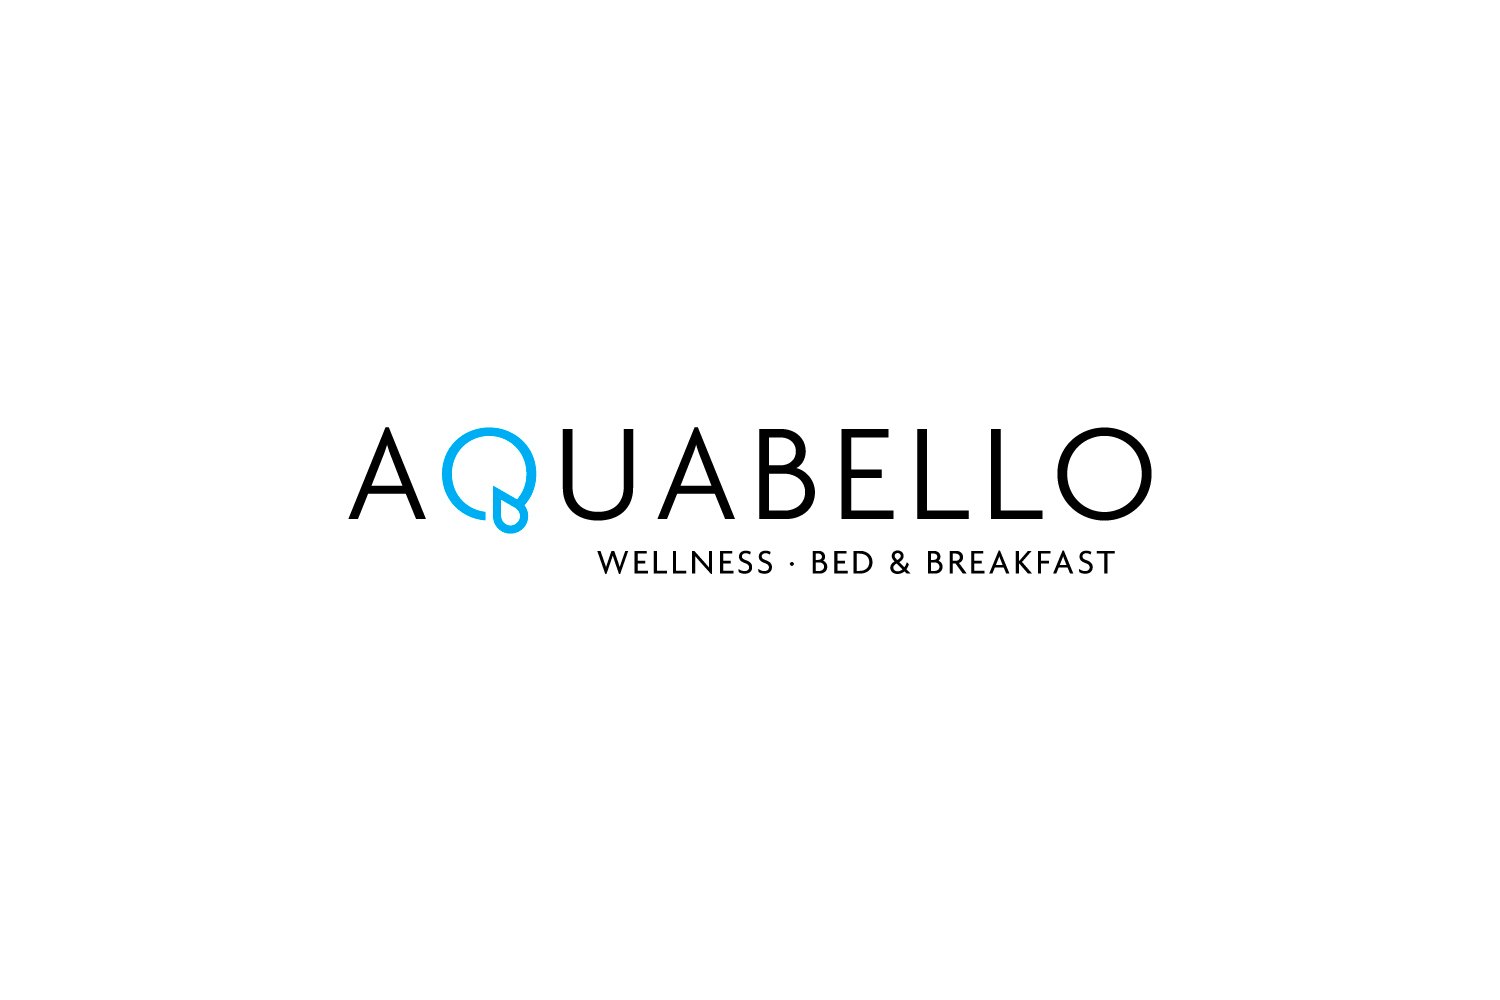 Compleet wellnessarrangement voor 2 bij Aquabello!